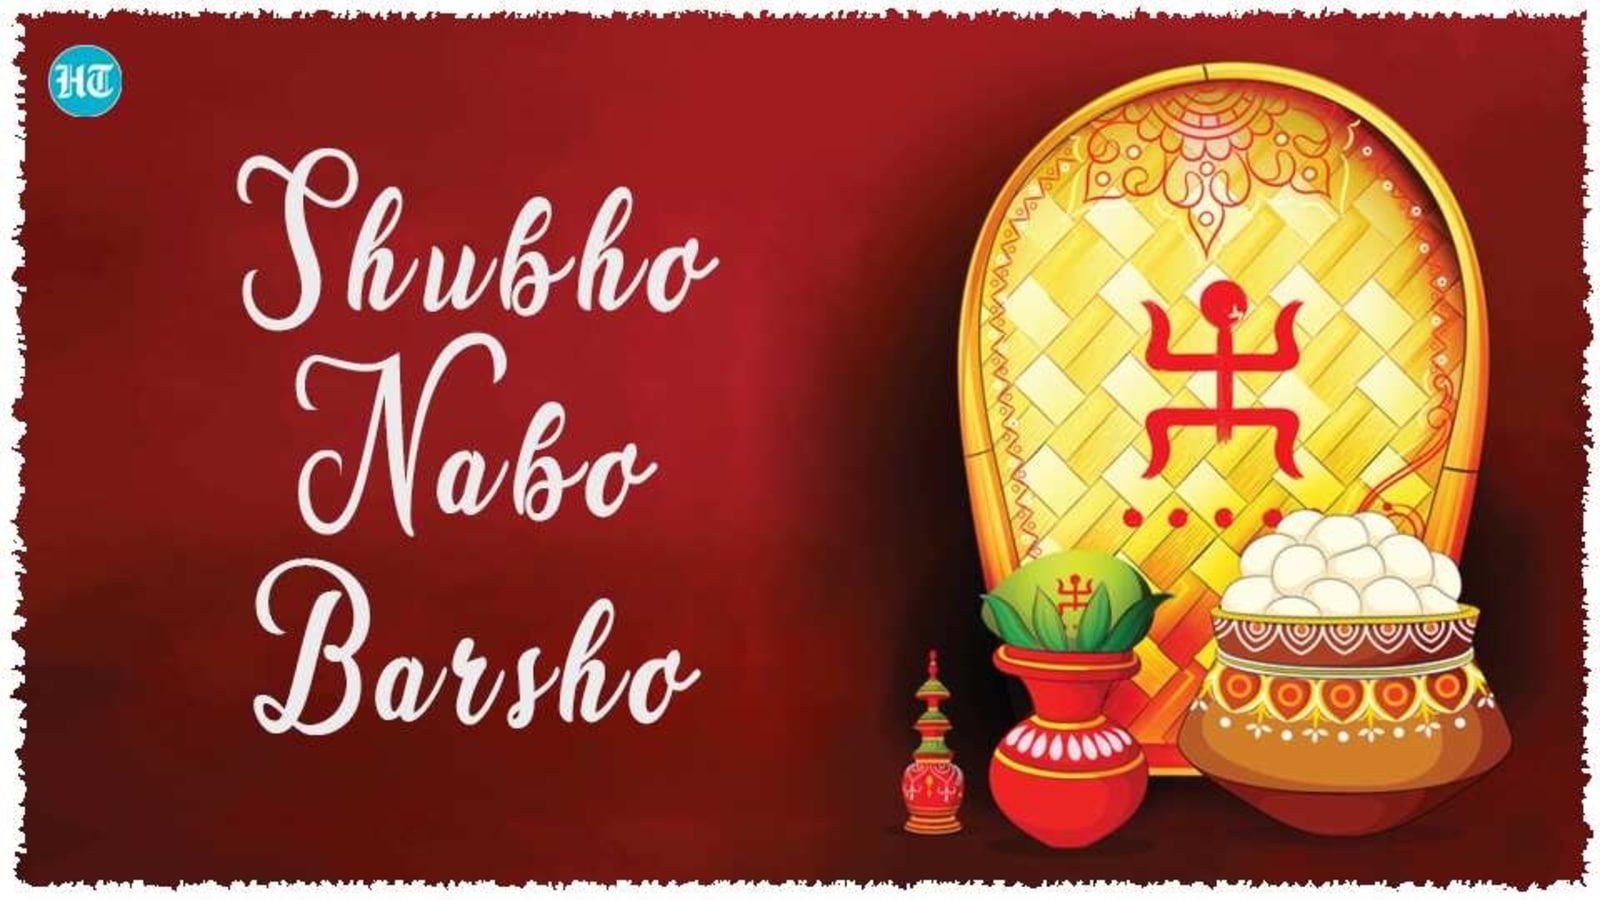 Shubho Nabo Barsho 2021 là dịp để chào đón một năm mới hạnh phúc đầy may mắn cho người Bengal. Hãy đến xem hình ảnh liên quan và cùng mong cho một năm mới đầy niềm vui, sức khỏe và thành công trong cuộc sống.